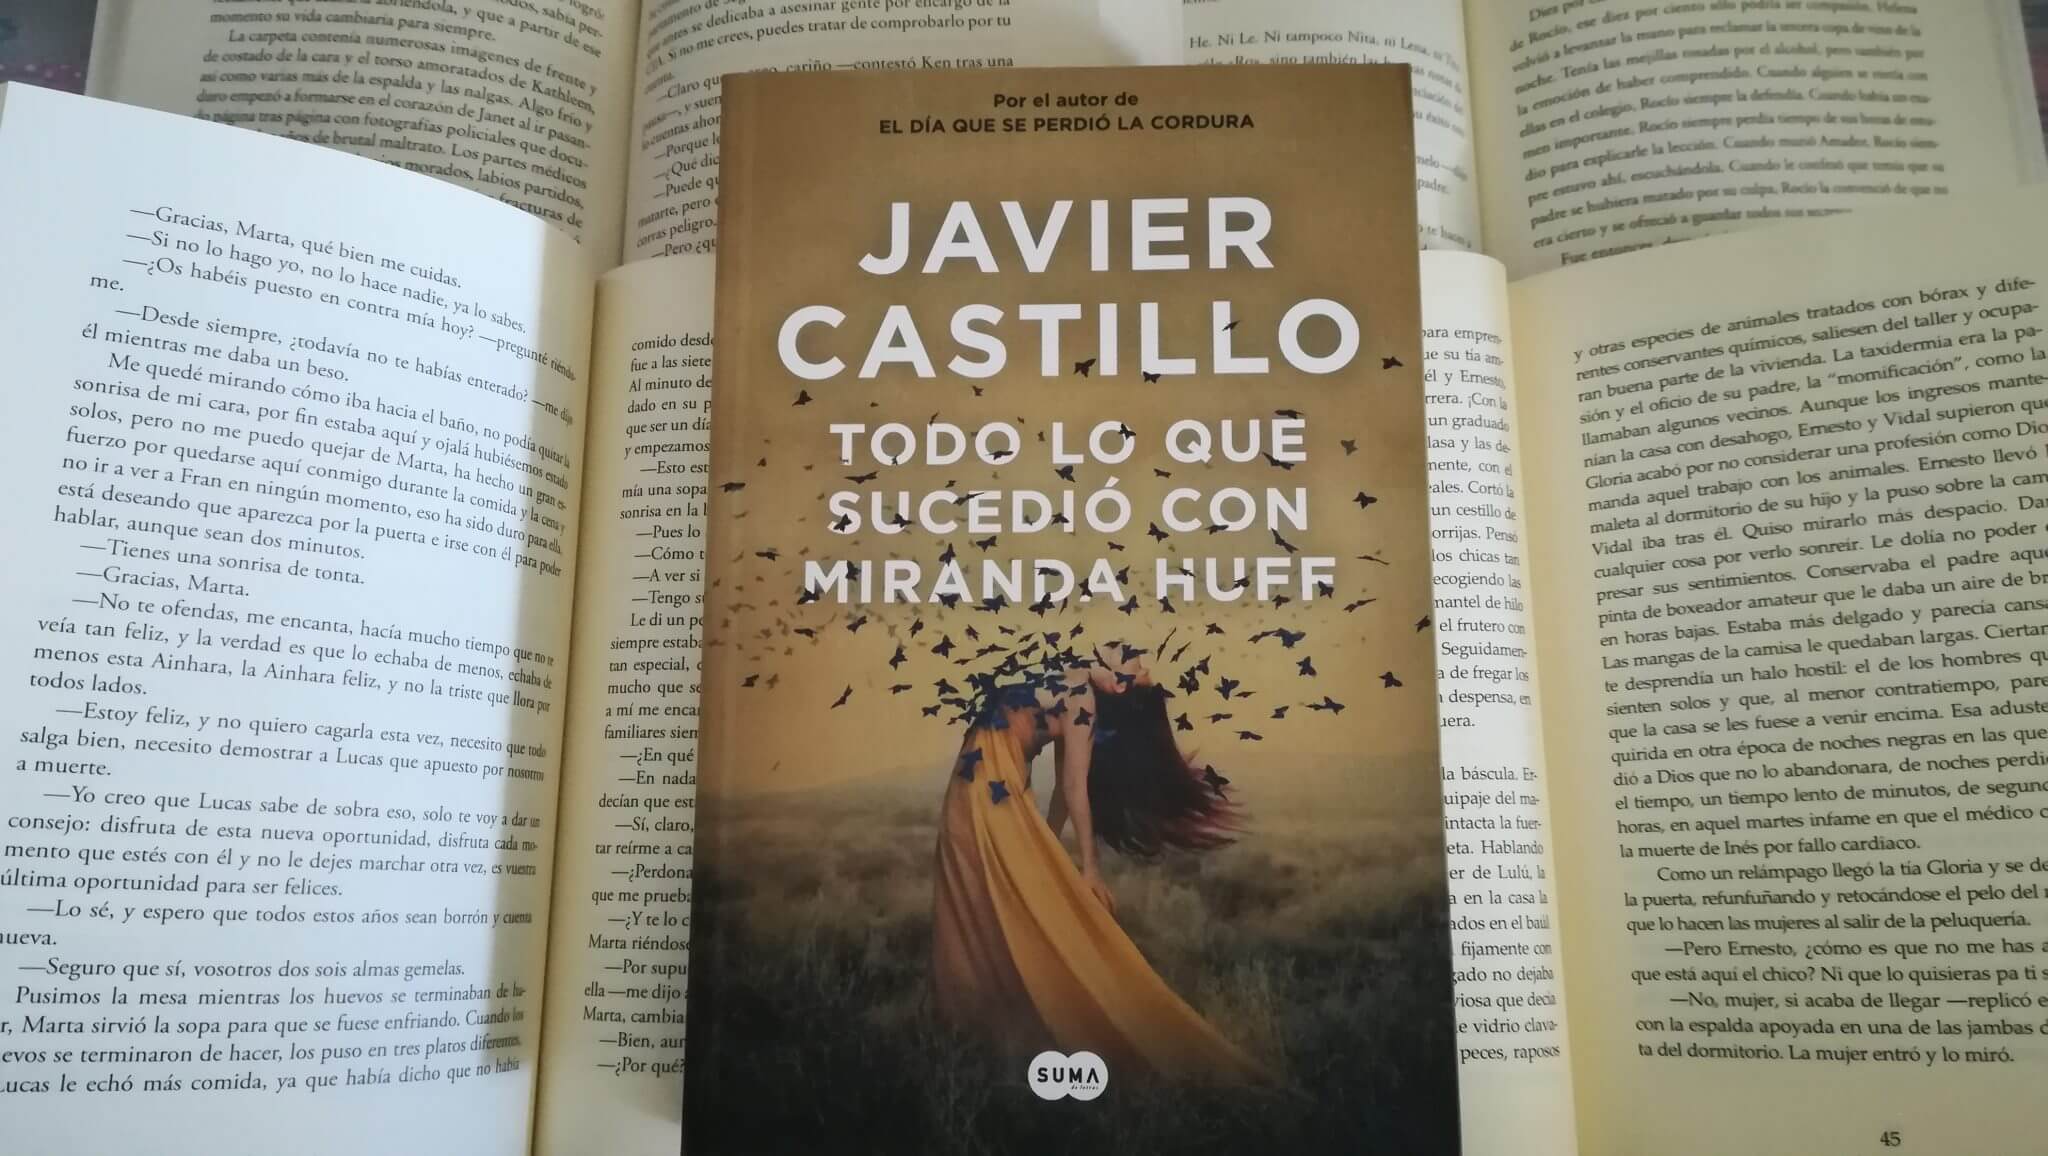 Todo lo que sucedió con Miranda Huff – Javier Castillo